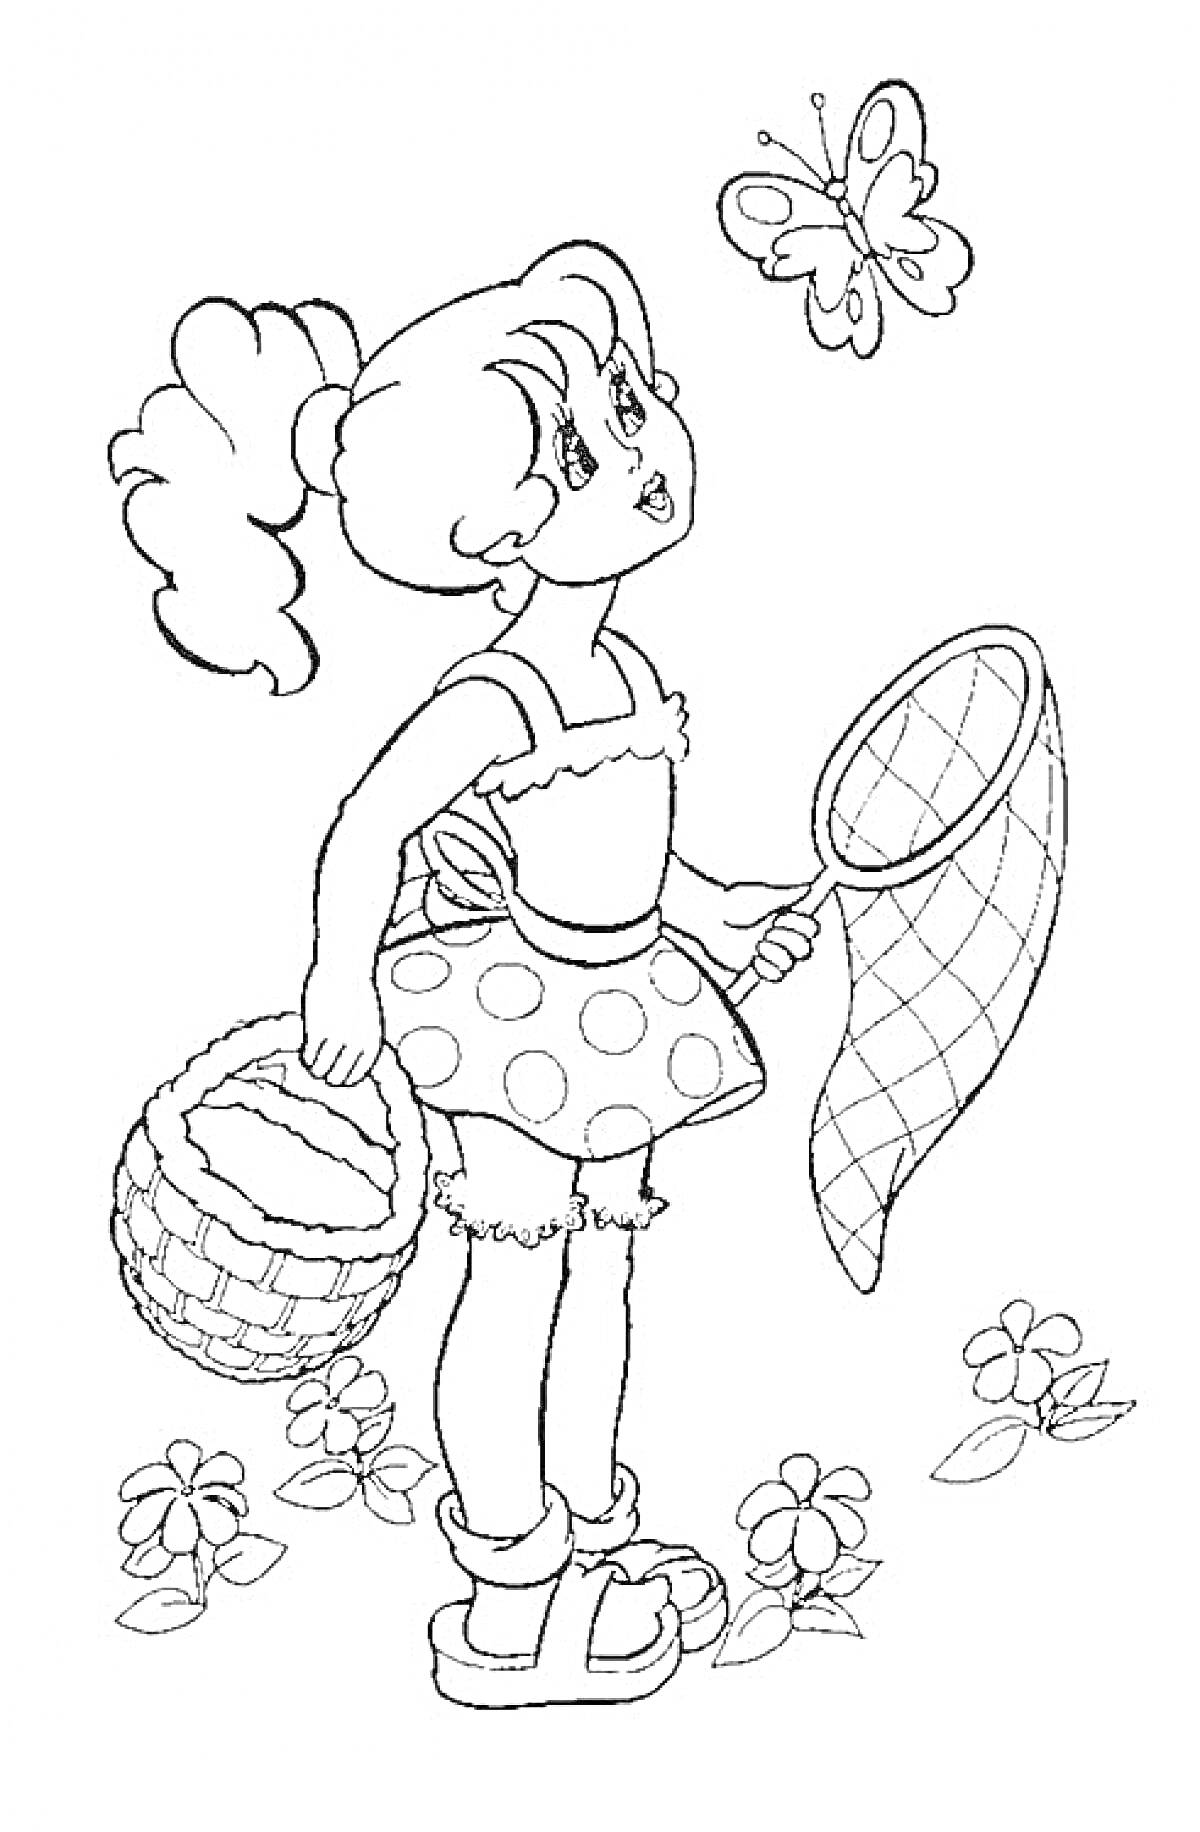 Раскраска Девочка с корзинкой и сачком смотрит на бабочку на лугу с цветами